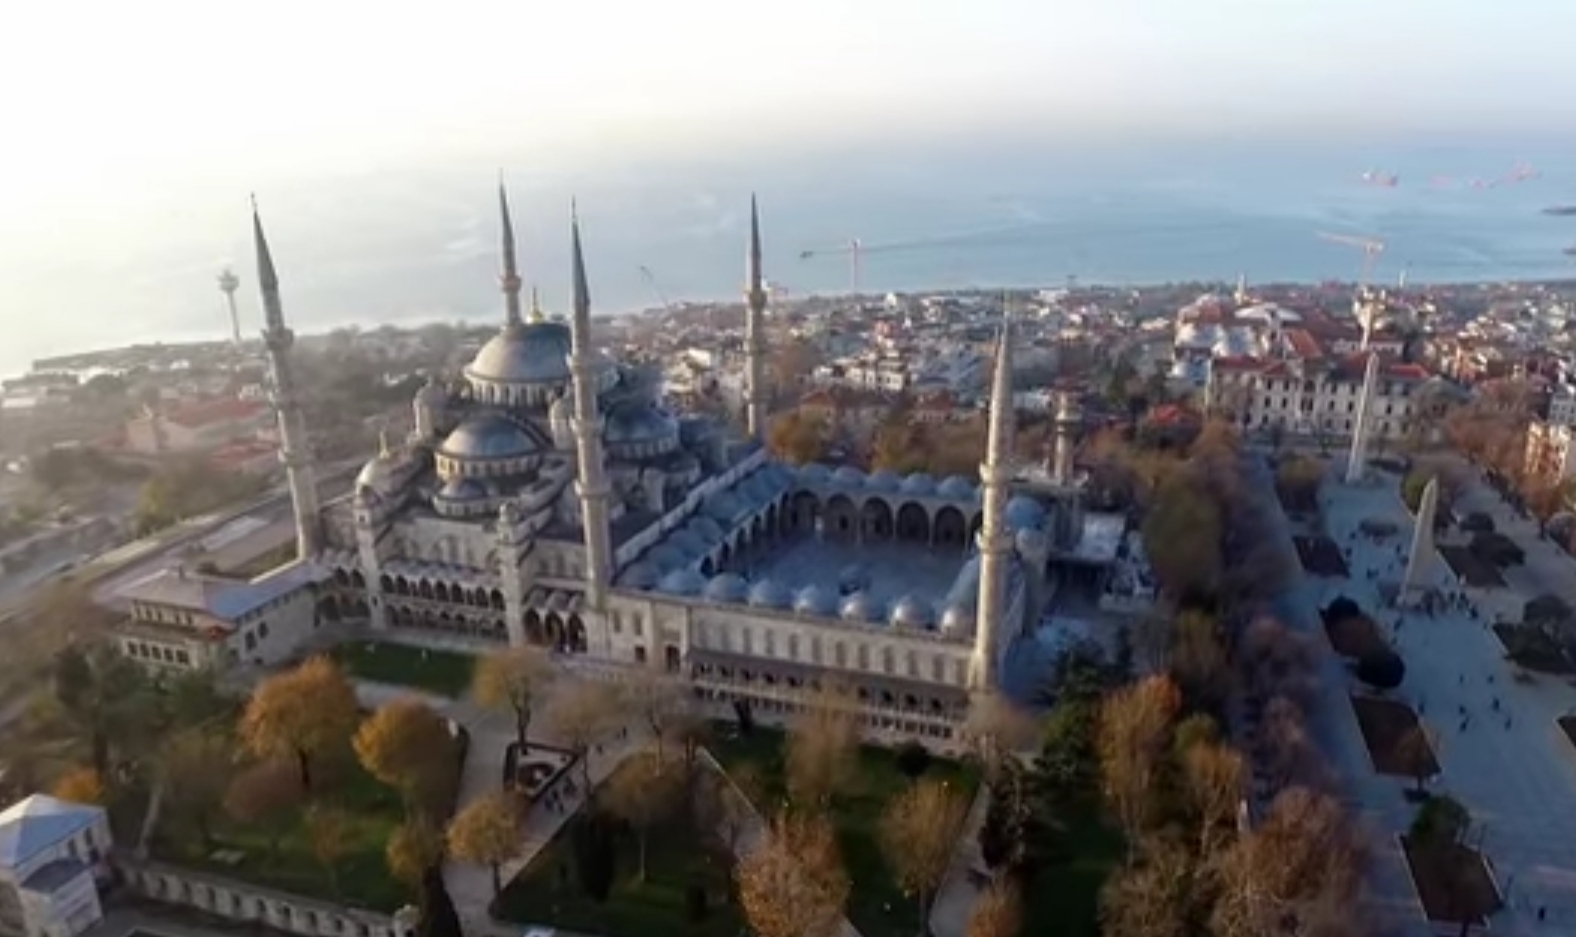 İstanbul Sultanahmet Camii